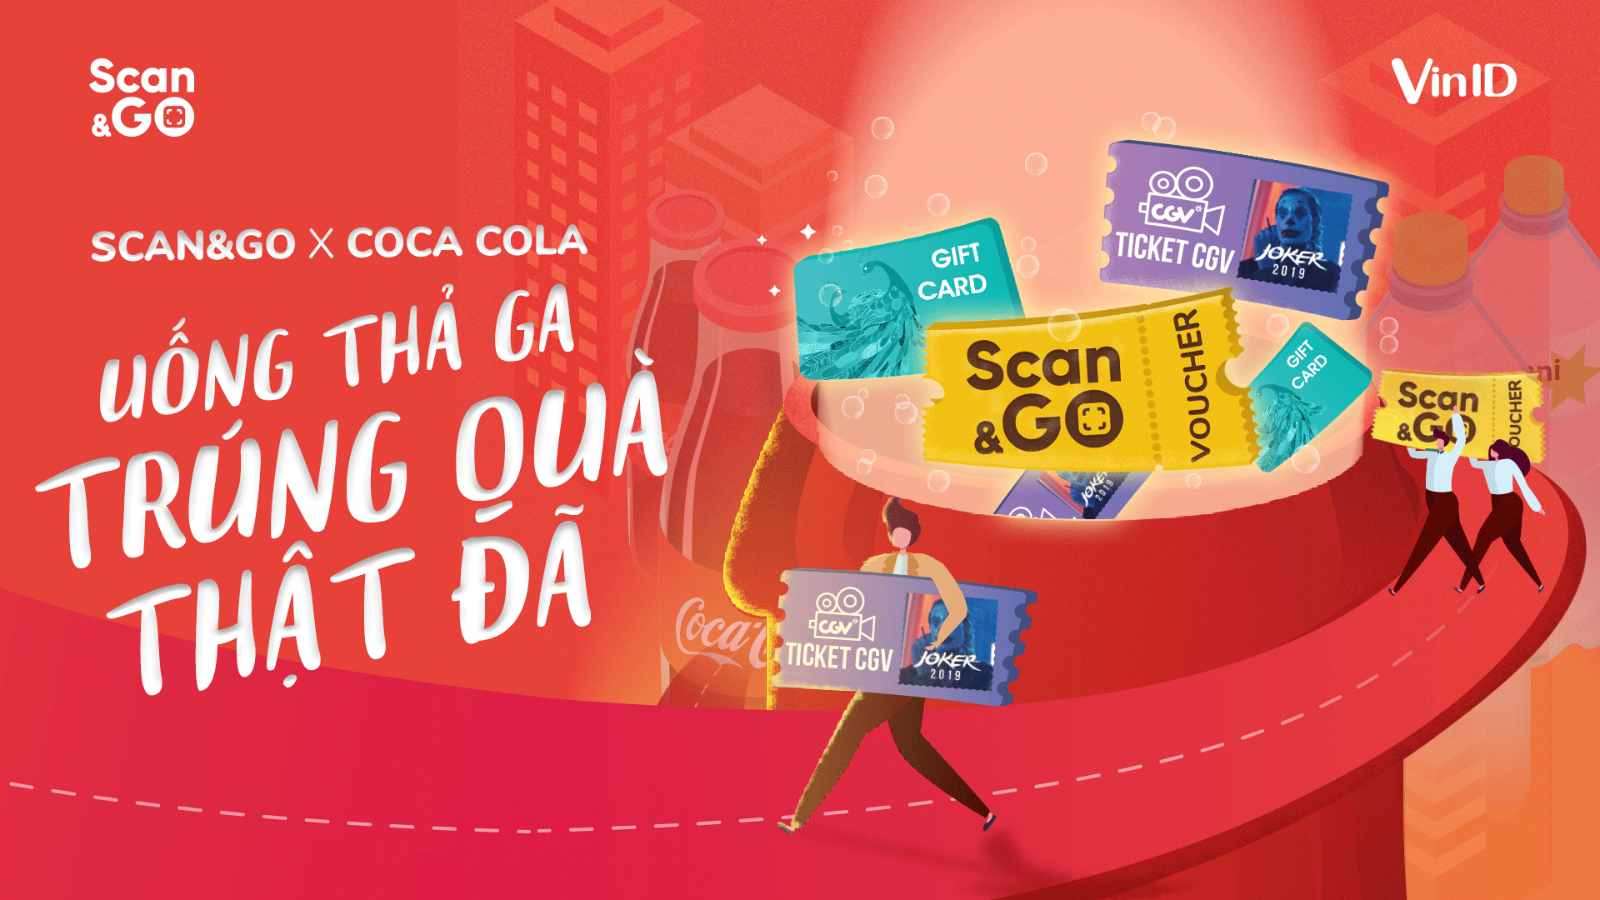 Thể lệ chương trình Scan&Go x Coca-Cola: "Uống thả ga, trúng quà thật đã"